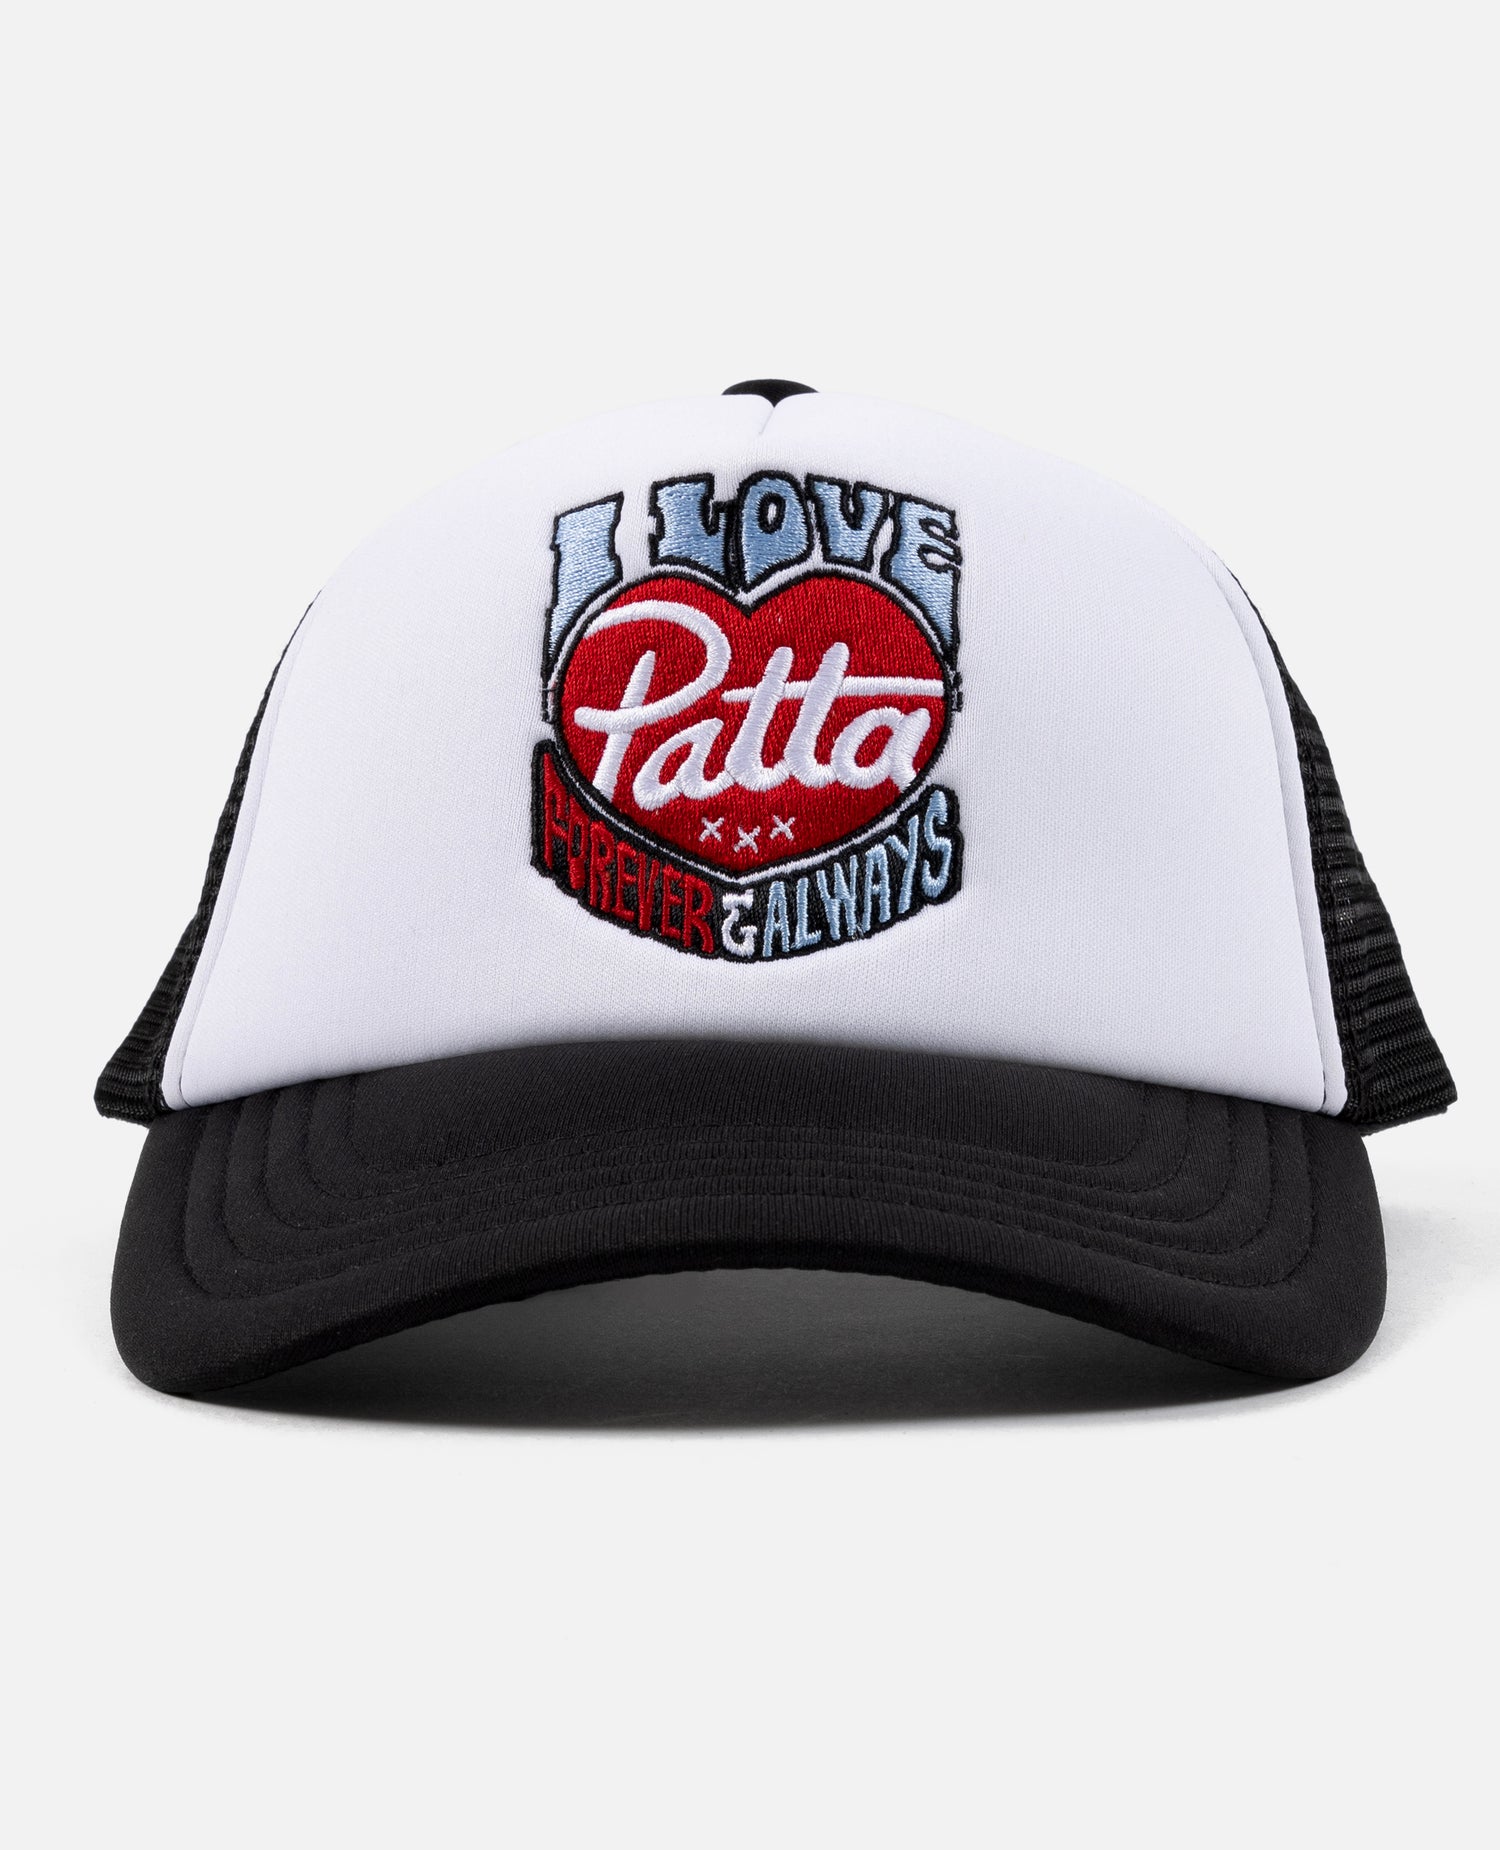 Patta Forever And Always Trucker Cap (Black/White)